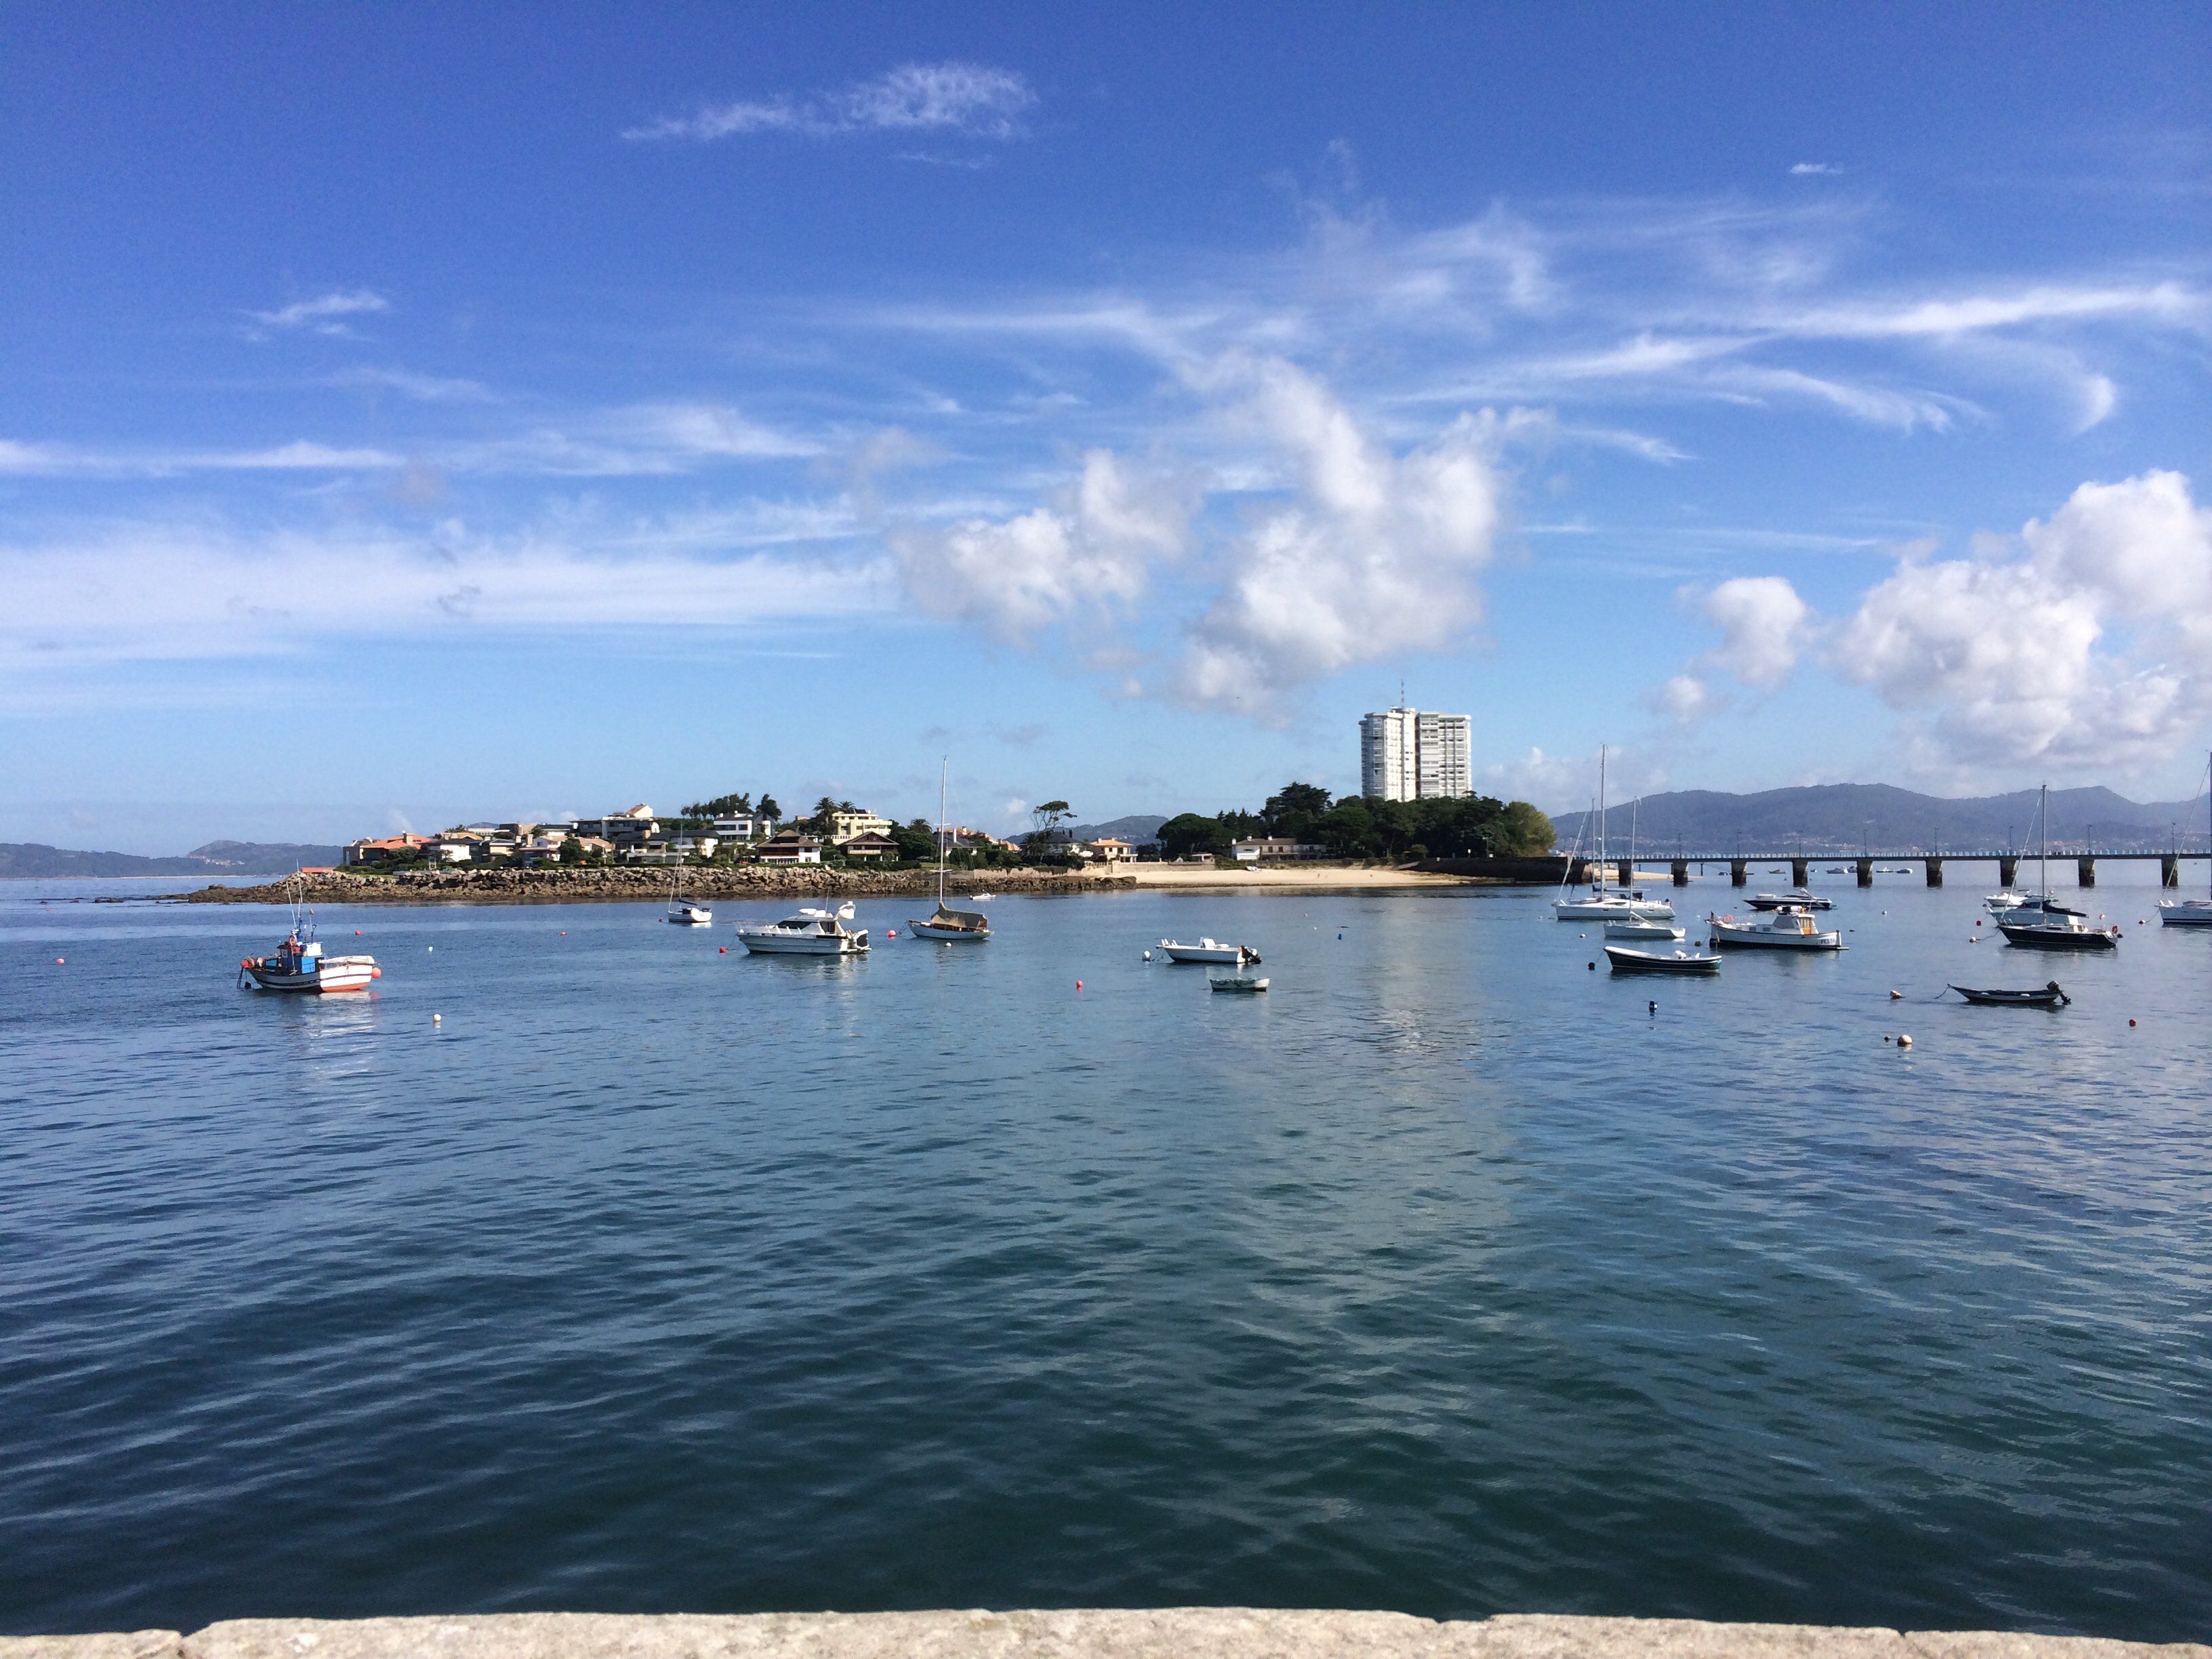 Salidas de pesca deportiva en Barco desde Canido desde sus playas y espigones